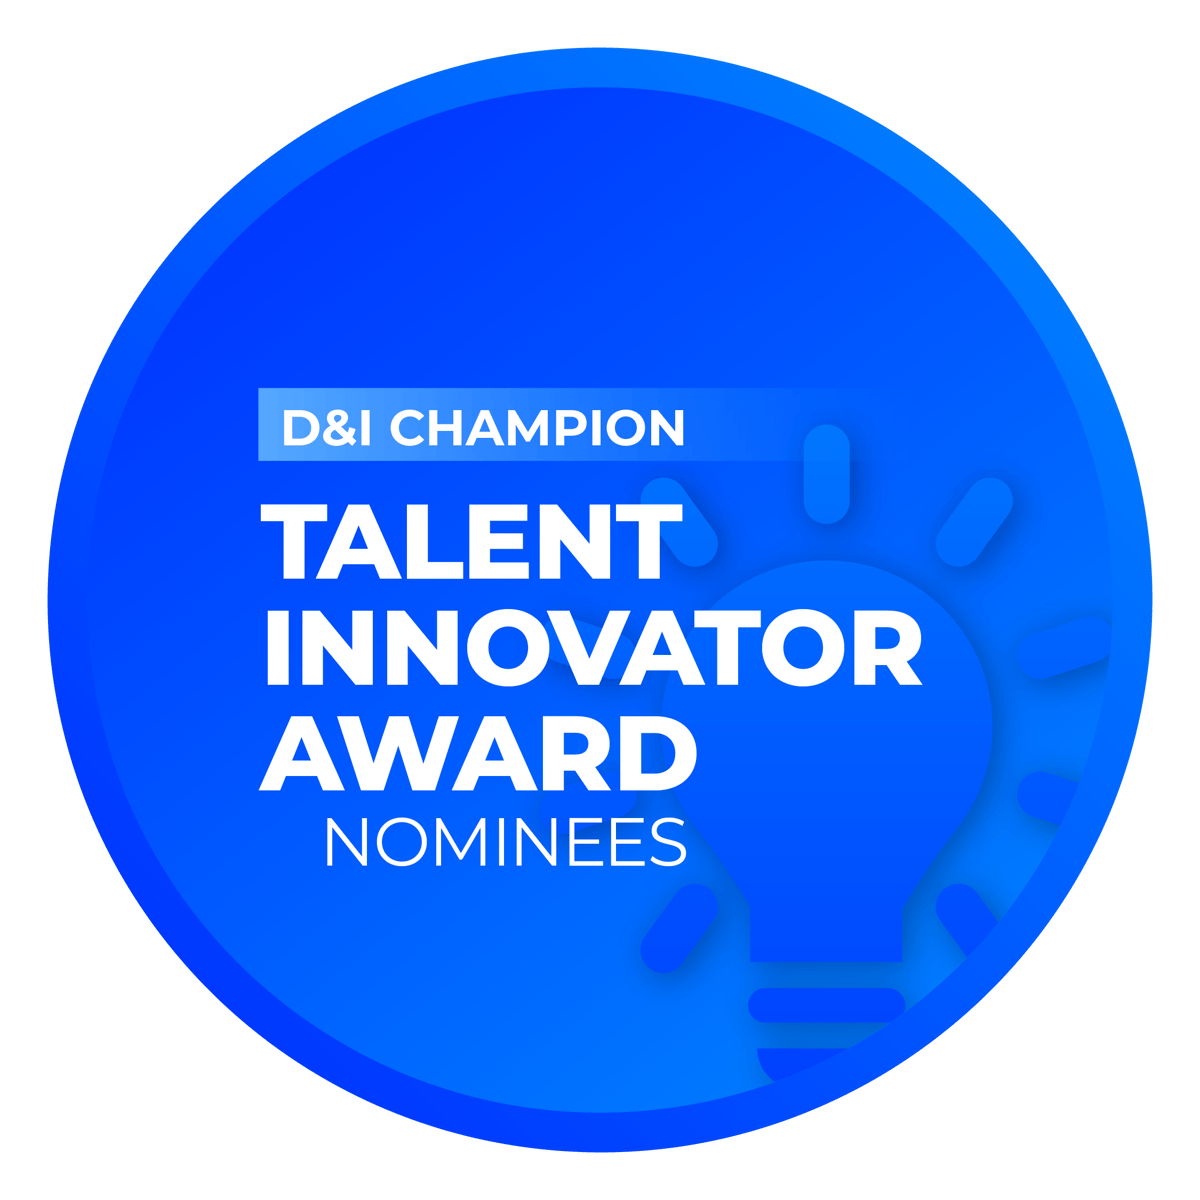 Talent Innovator Award: D&I Champion Nominees